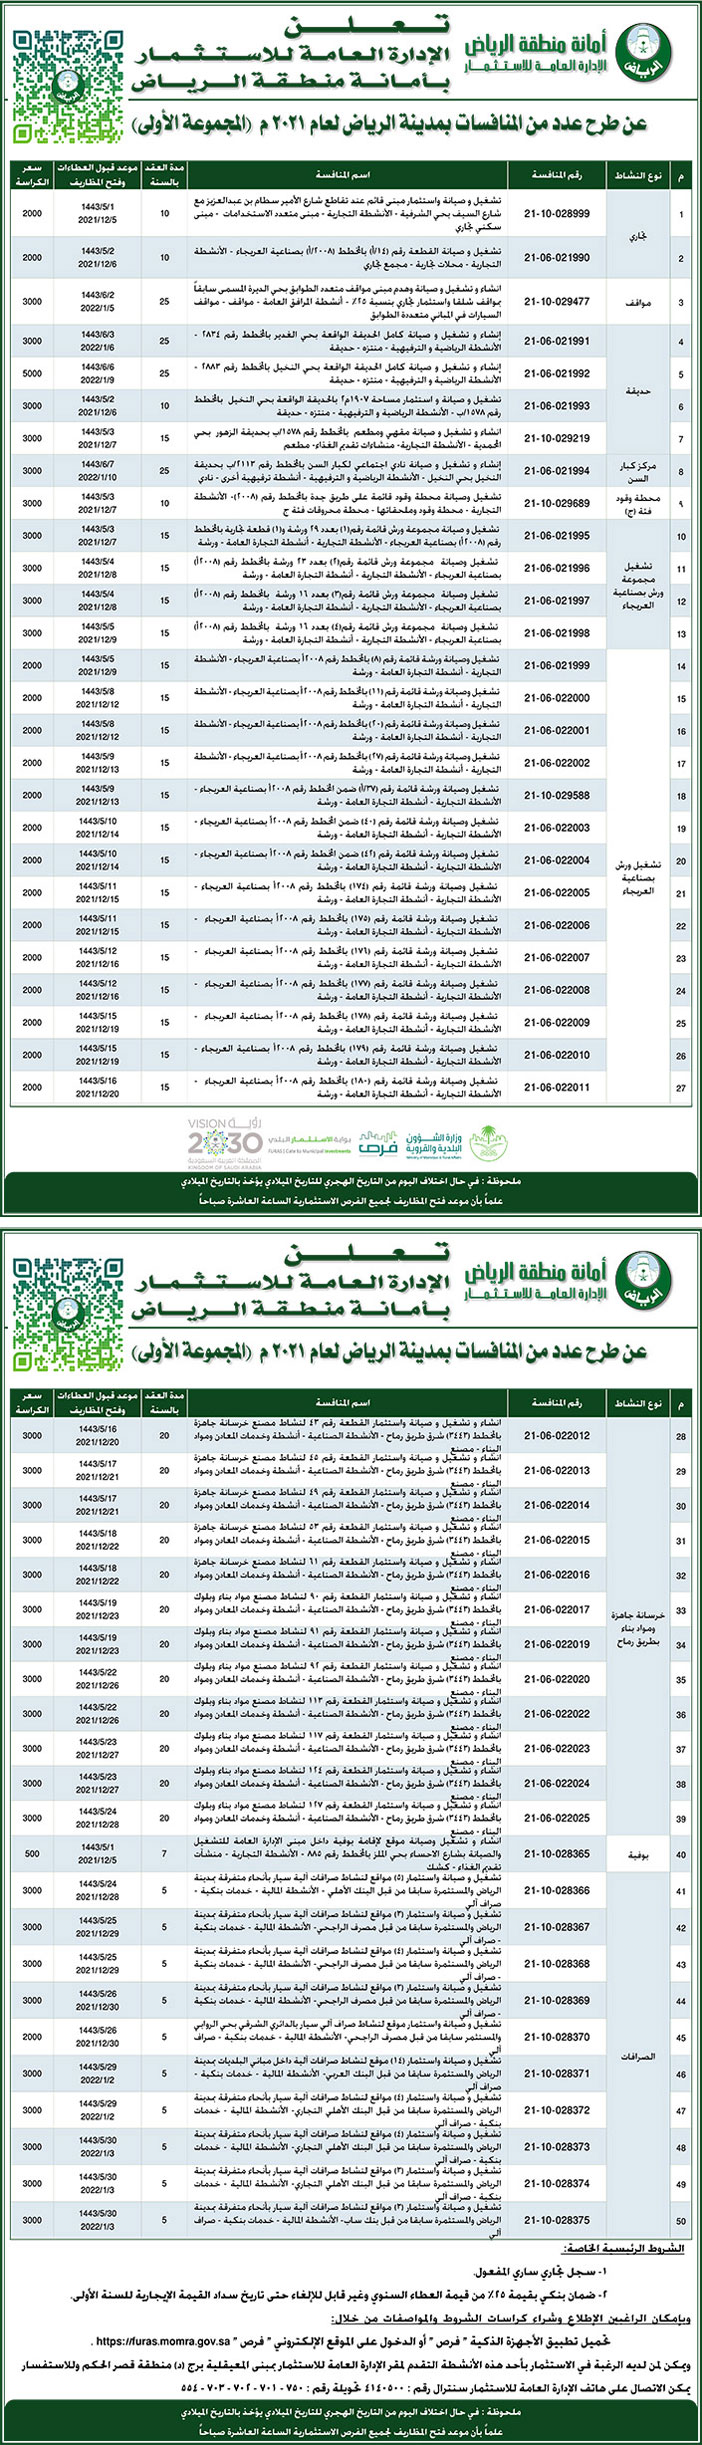 أمانة منطقة الرياض تطرح عدد من المنافسات بمدينة الرياض لعام 2021م 